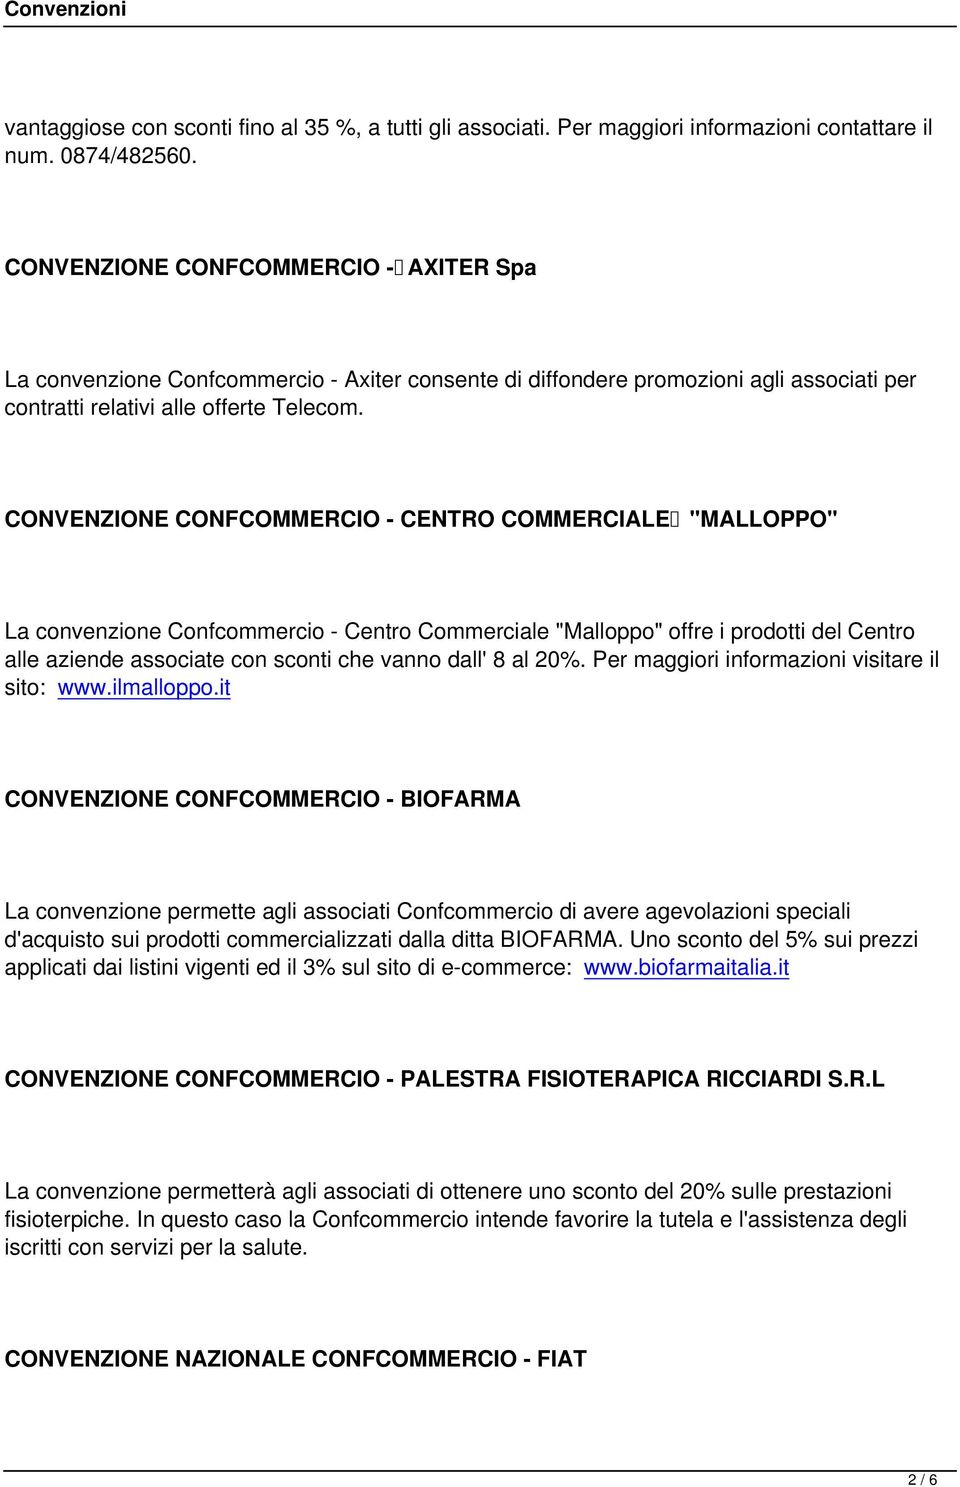 CONVENZIONE CONFCOMMERCIO - CENTRO COMMERCIALE "MALLOPPO" La convenzione Confcommercio - Centro Commerciale "Malloppo" offre i prodotti del Centro alle aziende associate con sconti che vanno dall' 8